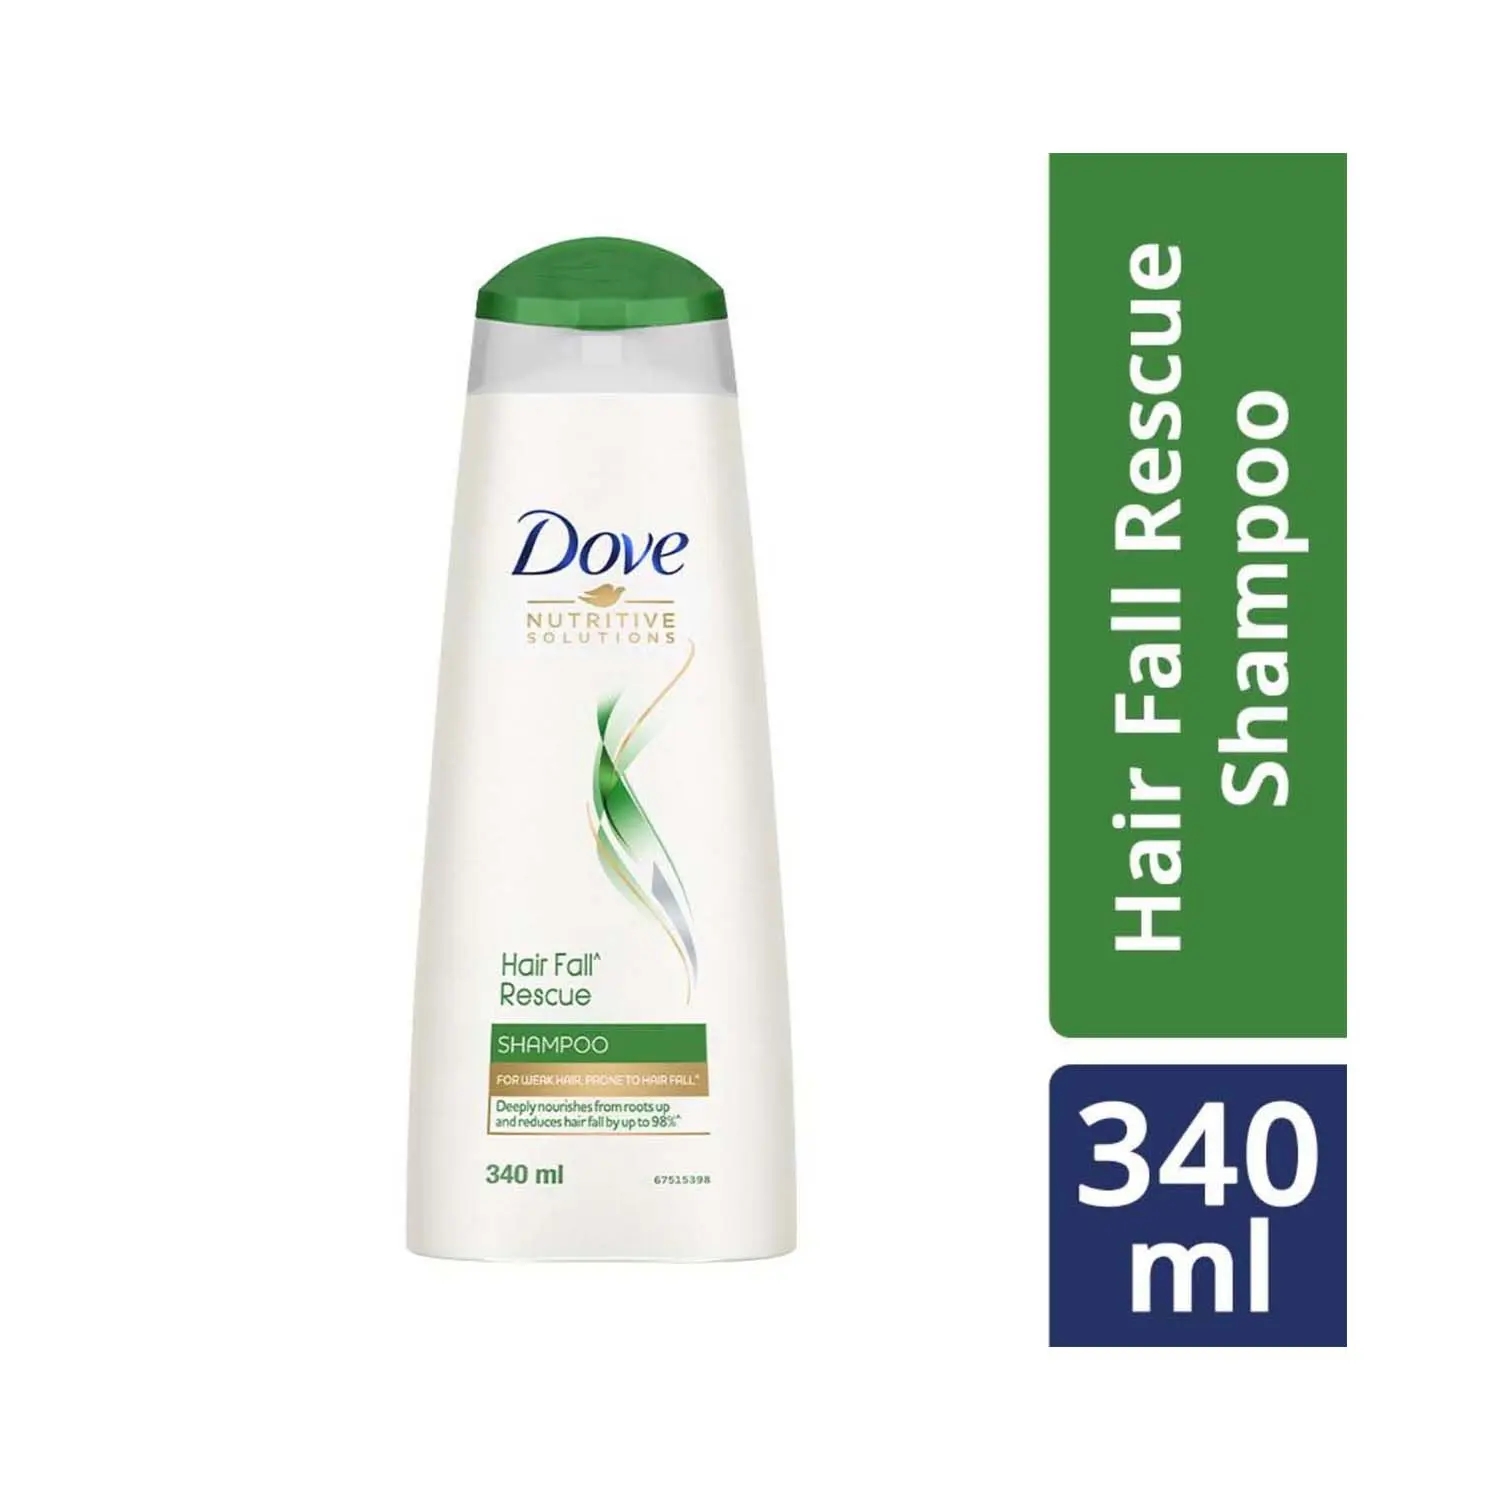 Dove | Dove Hair Fall Rescue Hair Shampoo (340ml)